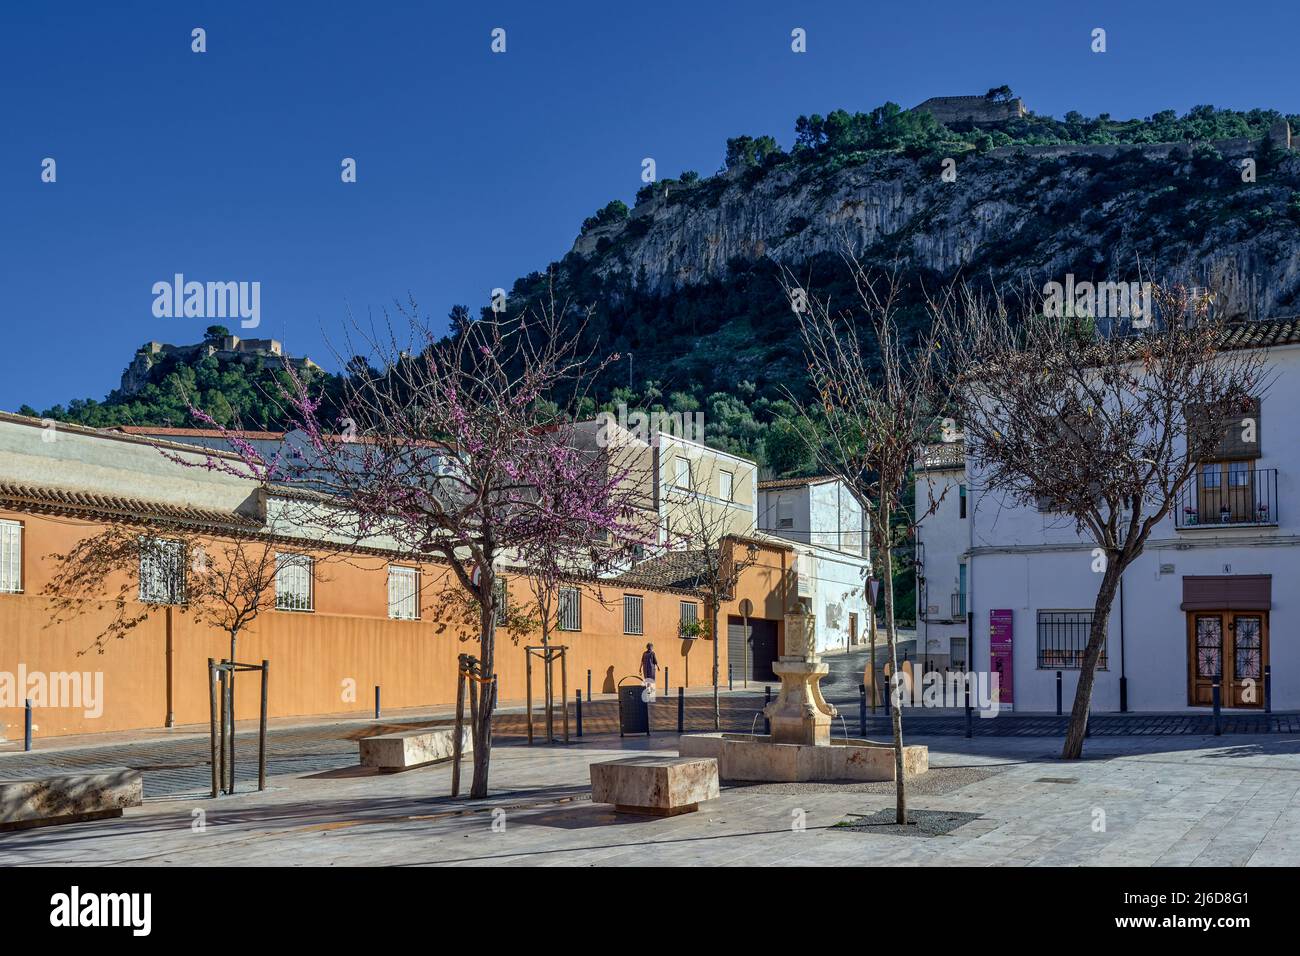 Vista panorámica del castillo desde la calle Trinquete del pueblo de Xativa, Jativa, provincia de Valencia, Comunidad Valenciana, España, Europa Stock Photo